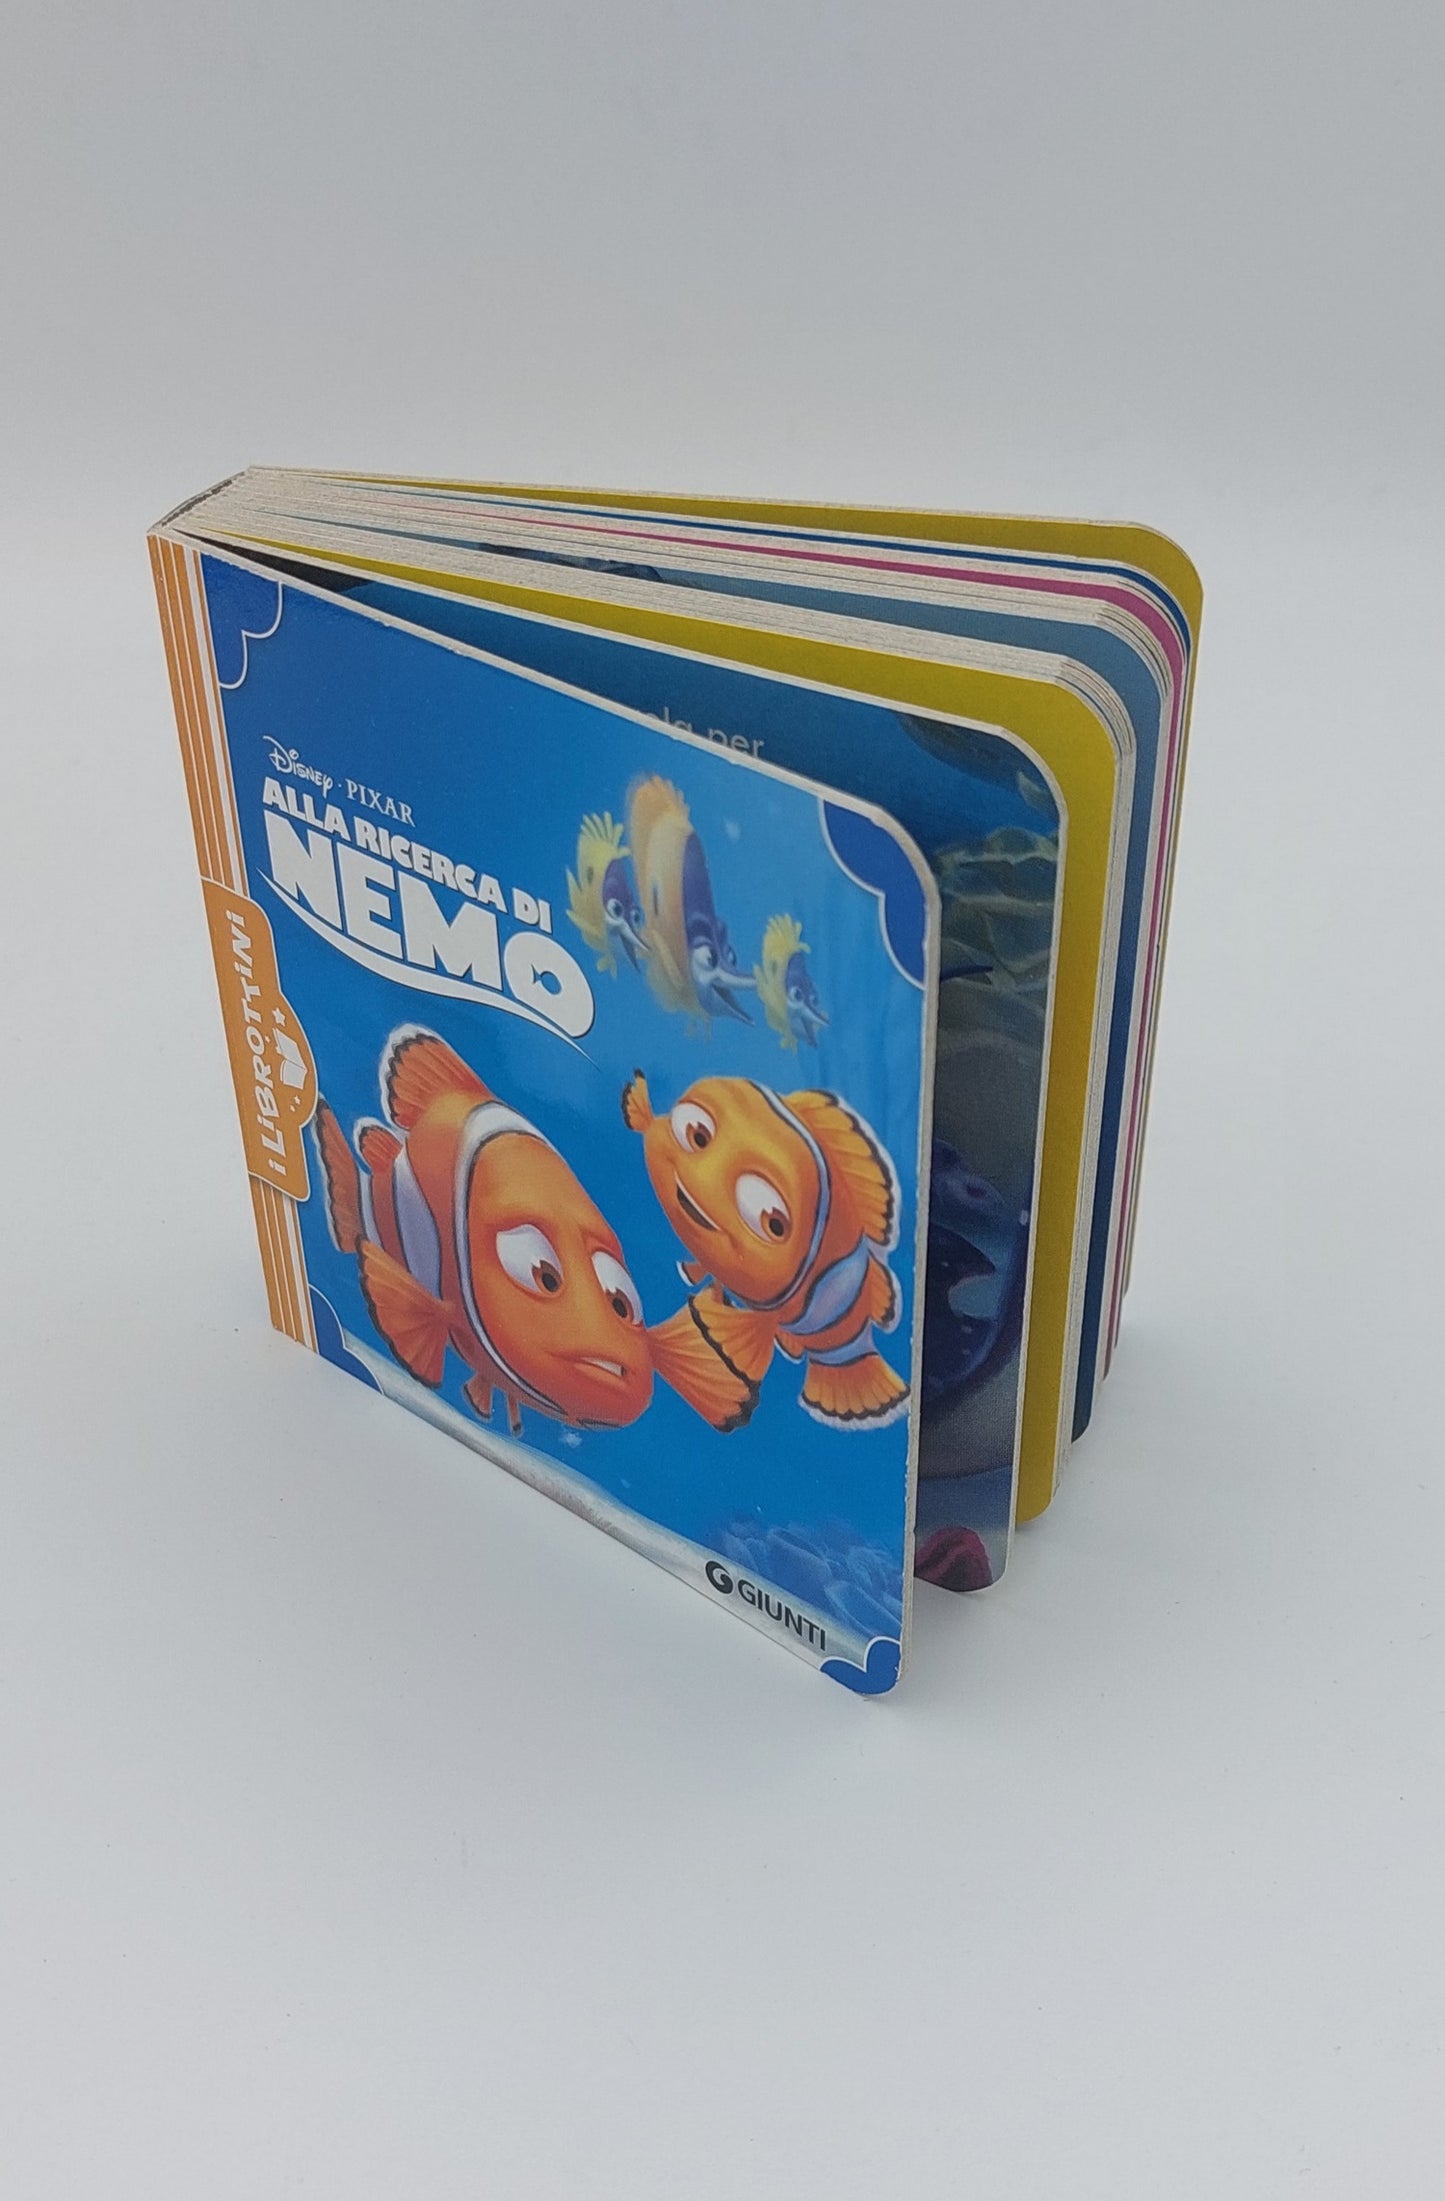 Alla Ricerca di Nemo - I Librottini